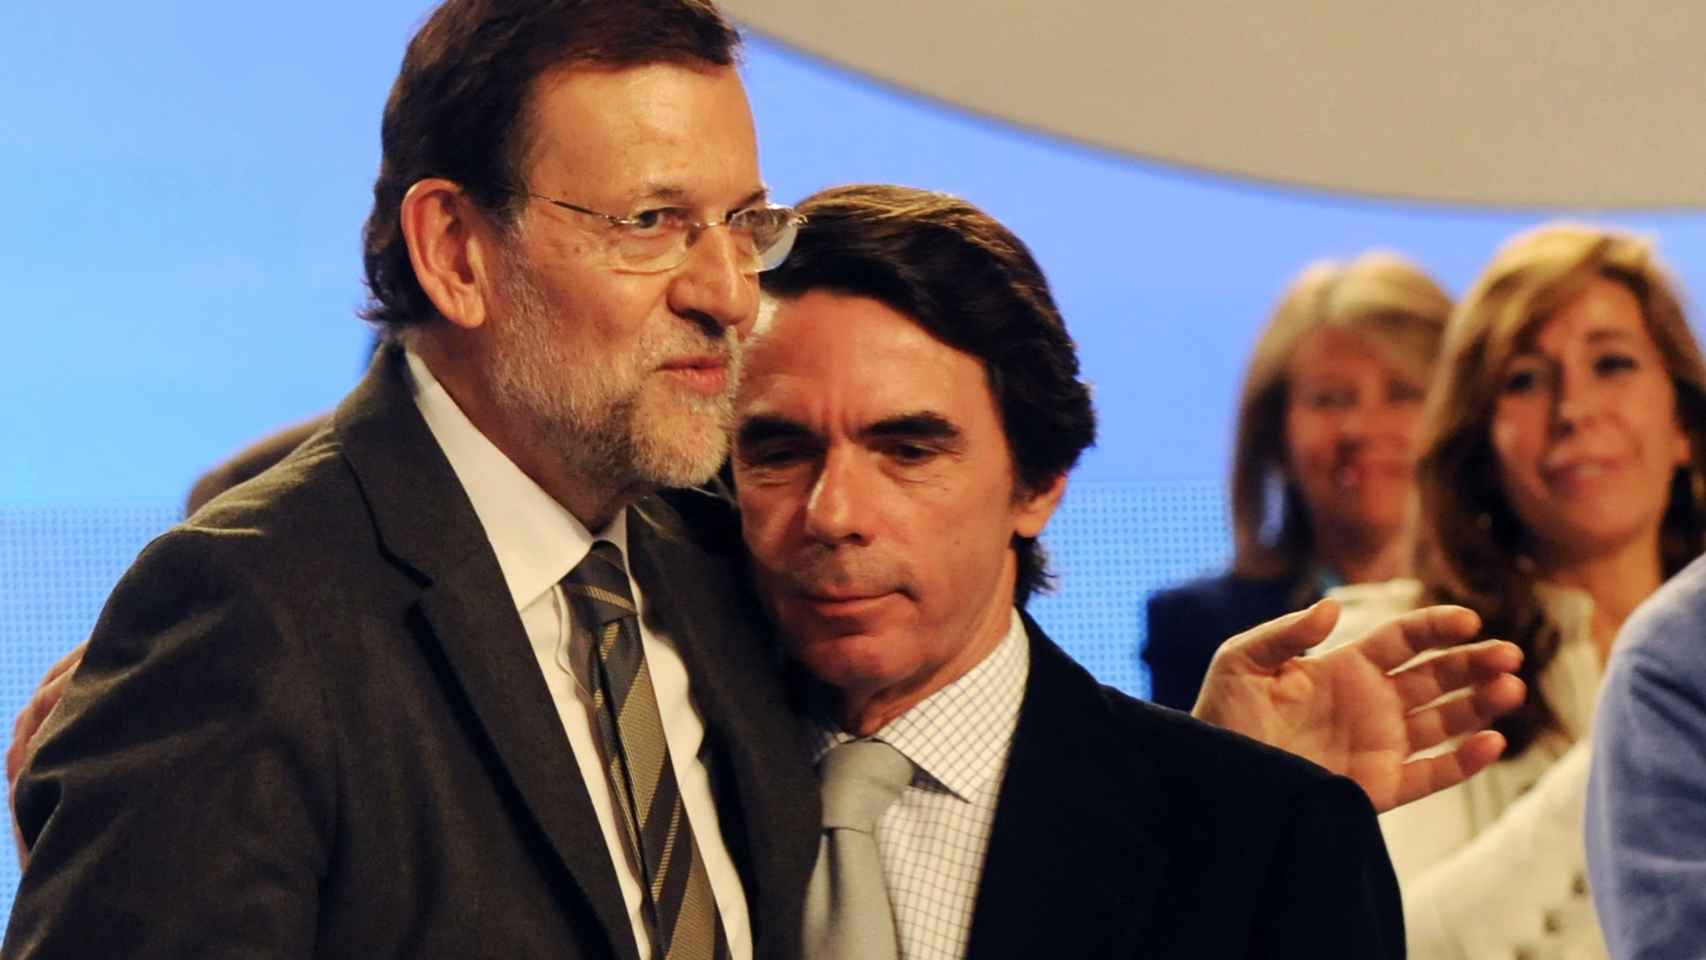 El abrazo del oso, o Aznar y Rajoy.